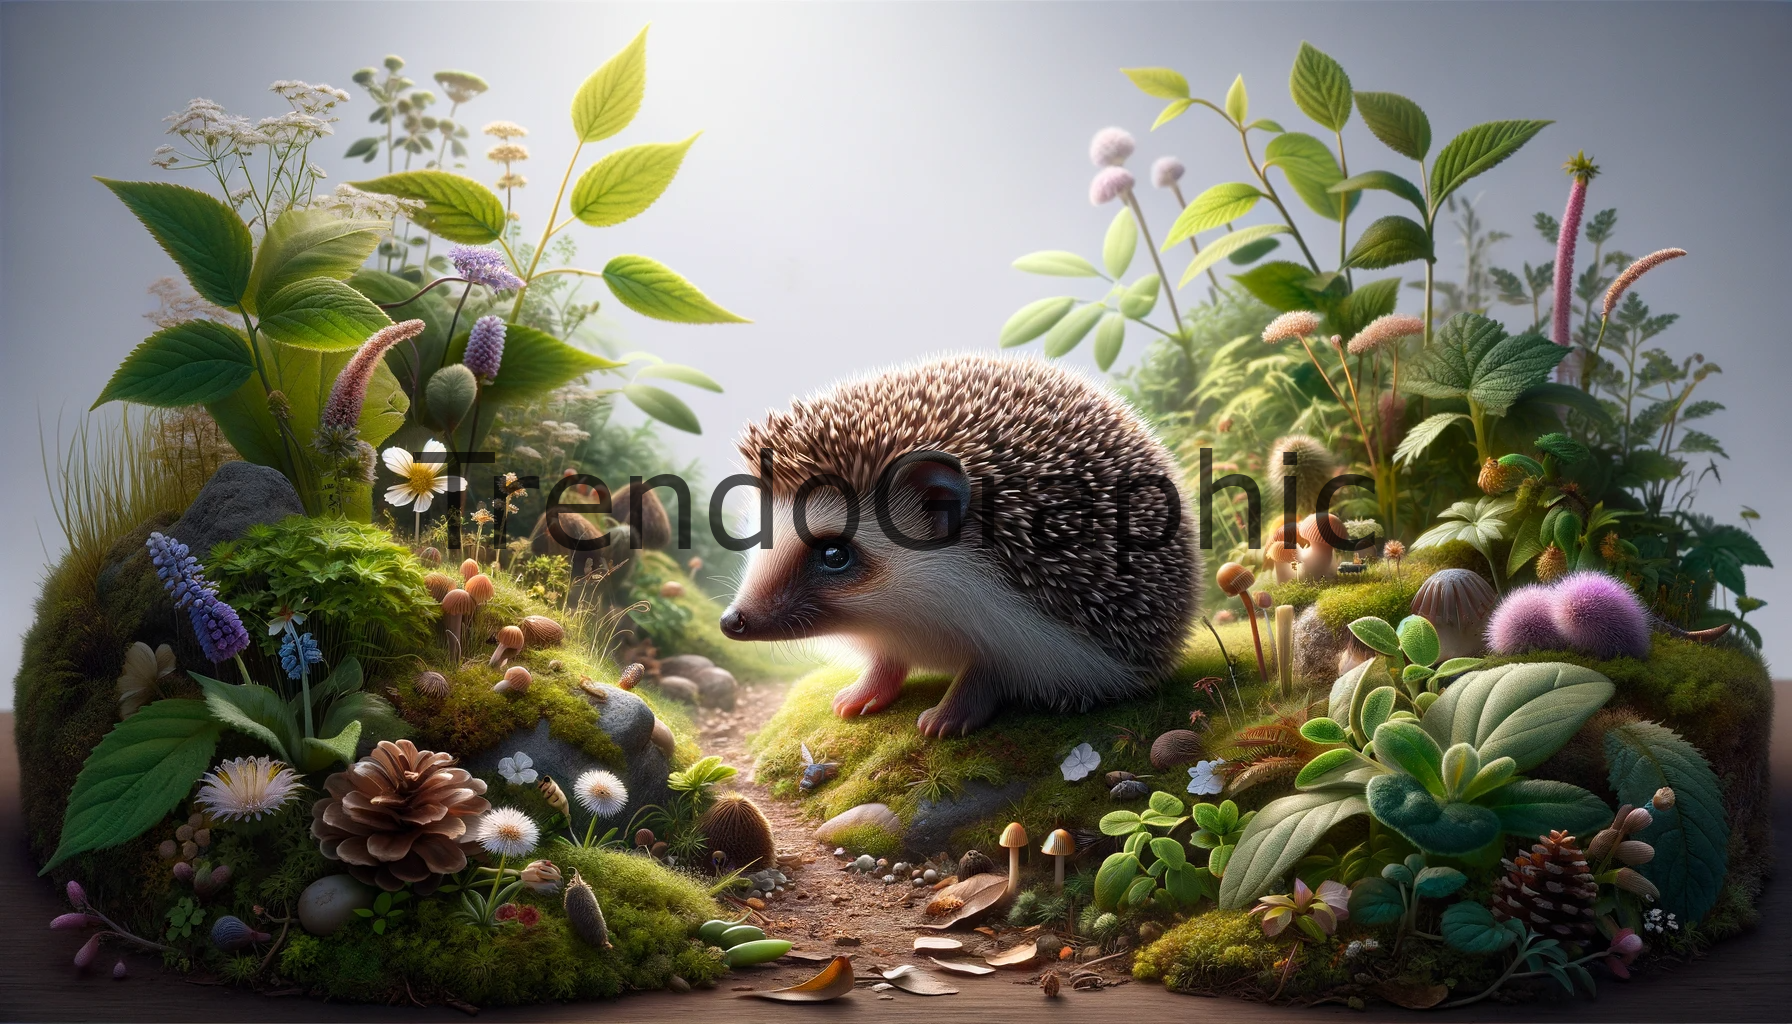 Tiny Explorer: Baby Hedgehog’s Garden Adventure